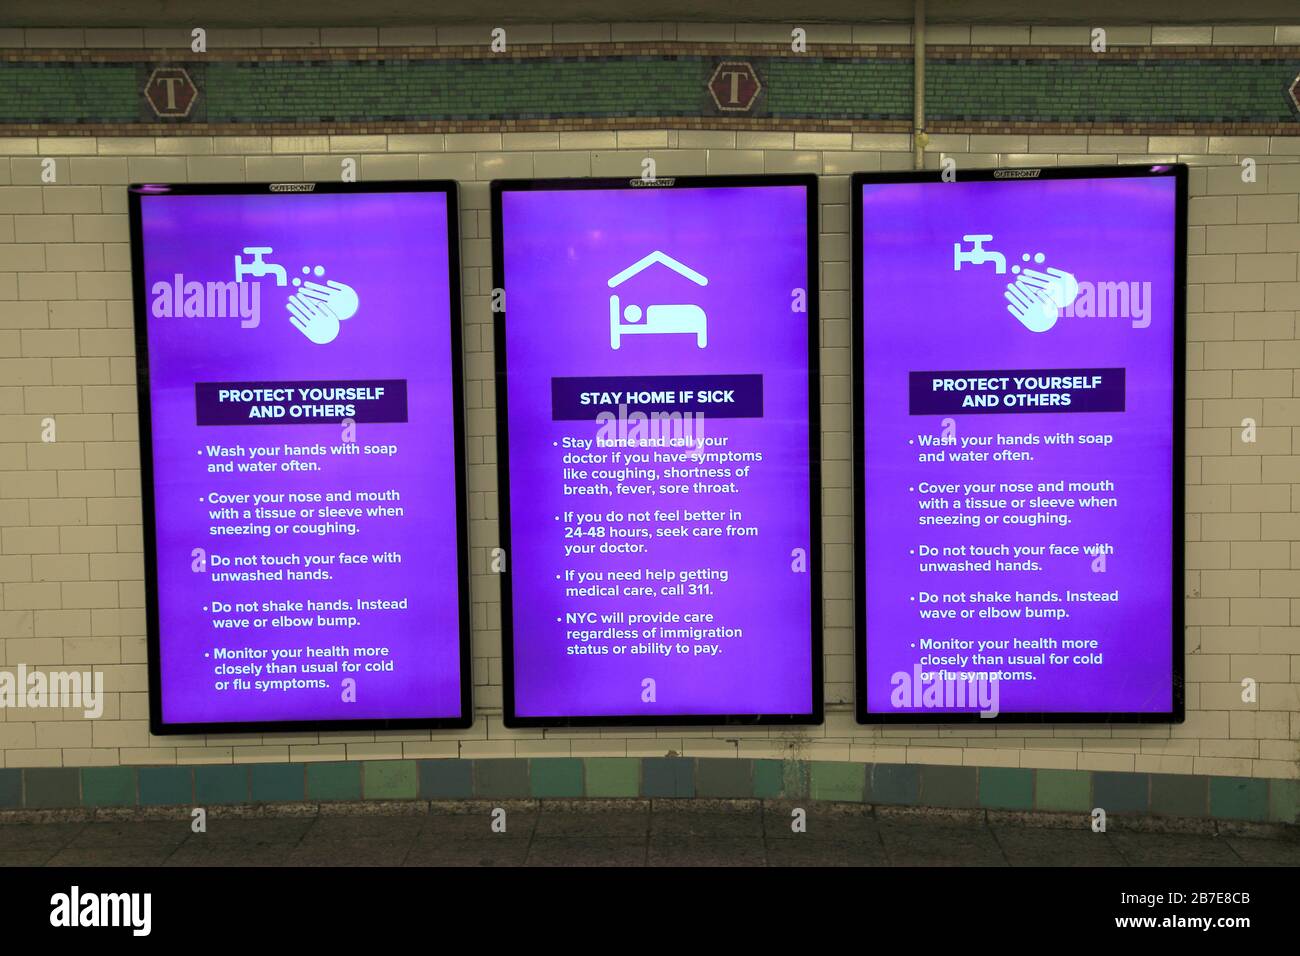 Digitale MTA-Schilder zeigen Informationen darüber an, wie man eine Verbreitung von Coronavirus, Der U-Bahn-Station Time Squares, New York City, am 15. März 2020 vermeiden, verhindern kann Stockfoto